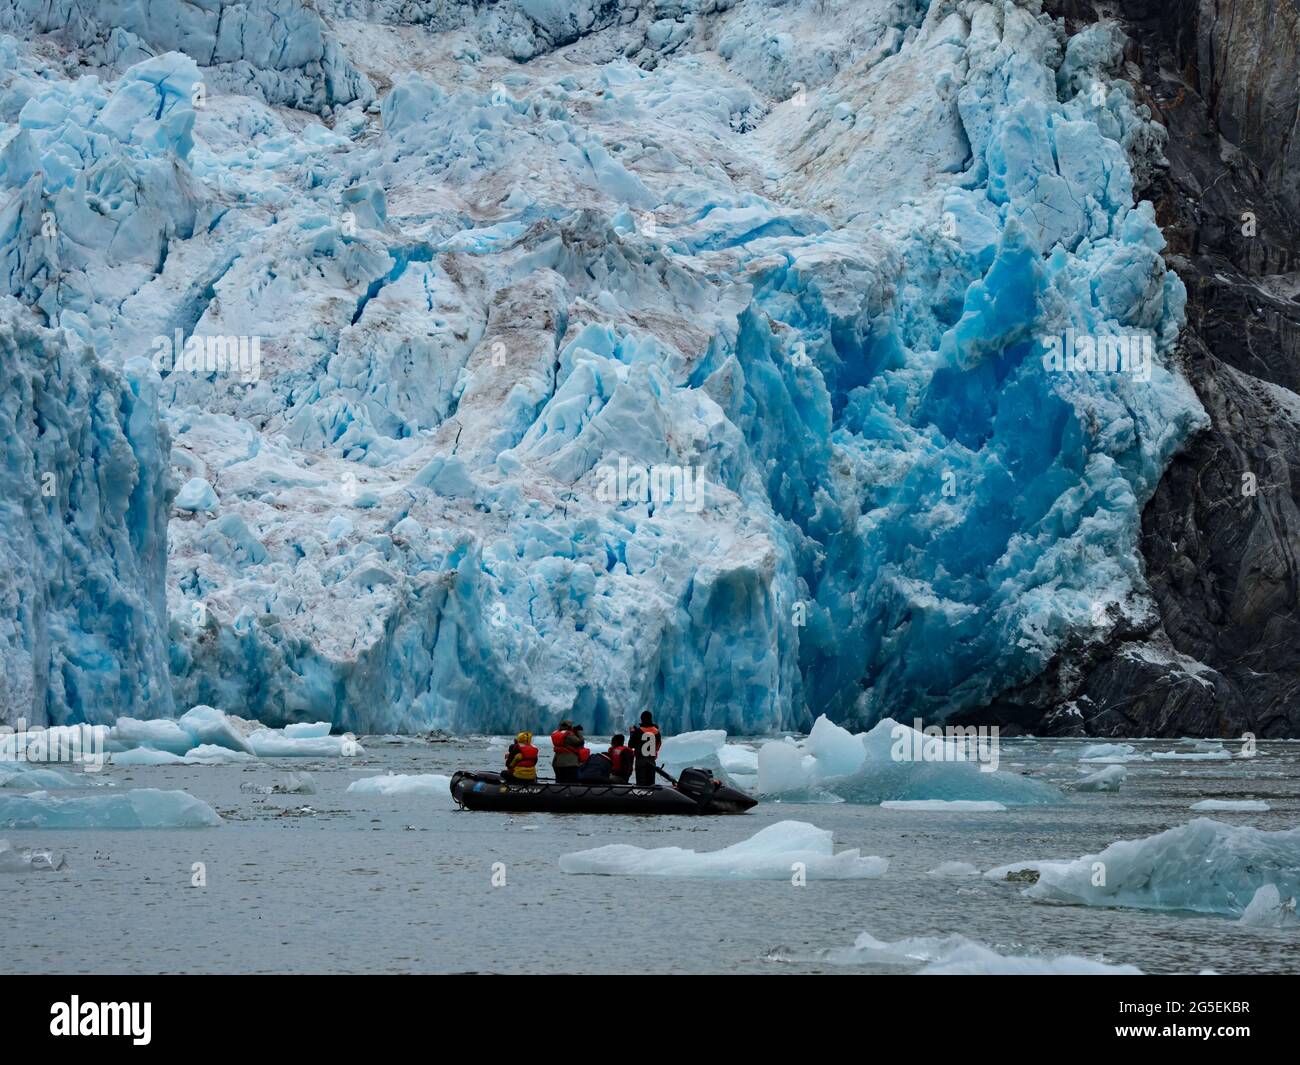 Die Erkundung des kiturigen Gletschers des South Sawyer Gletschers im Tierkreis im Tracy Arm Wildnisgebiet, Tongass National Forest, Alaska, USA Stockfoto